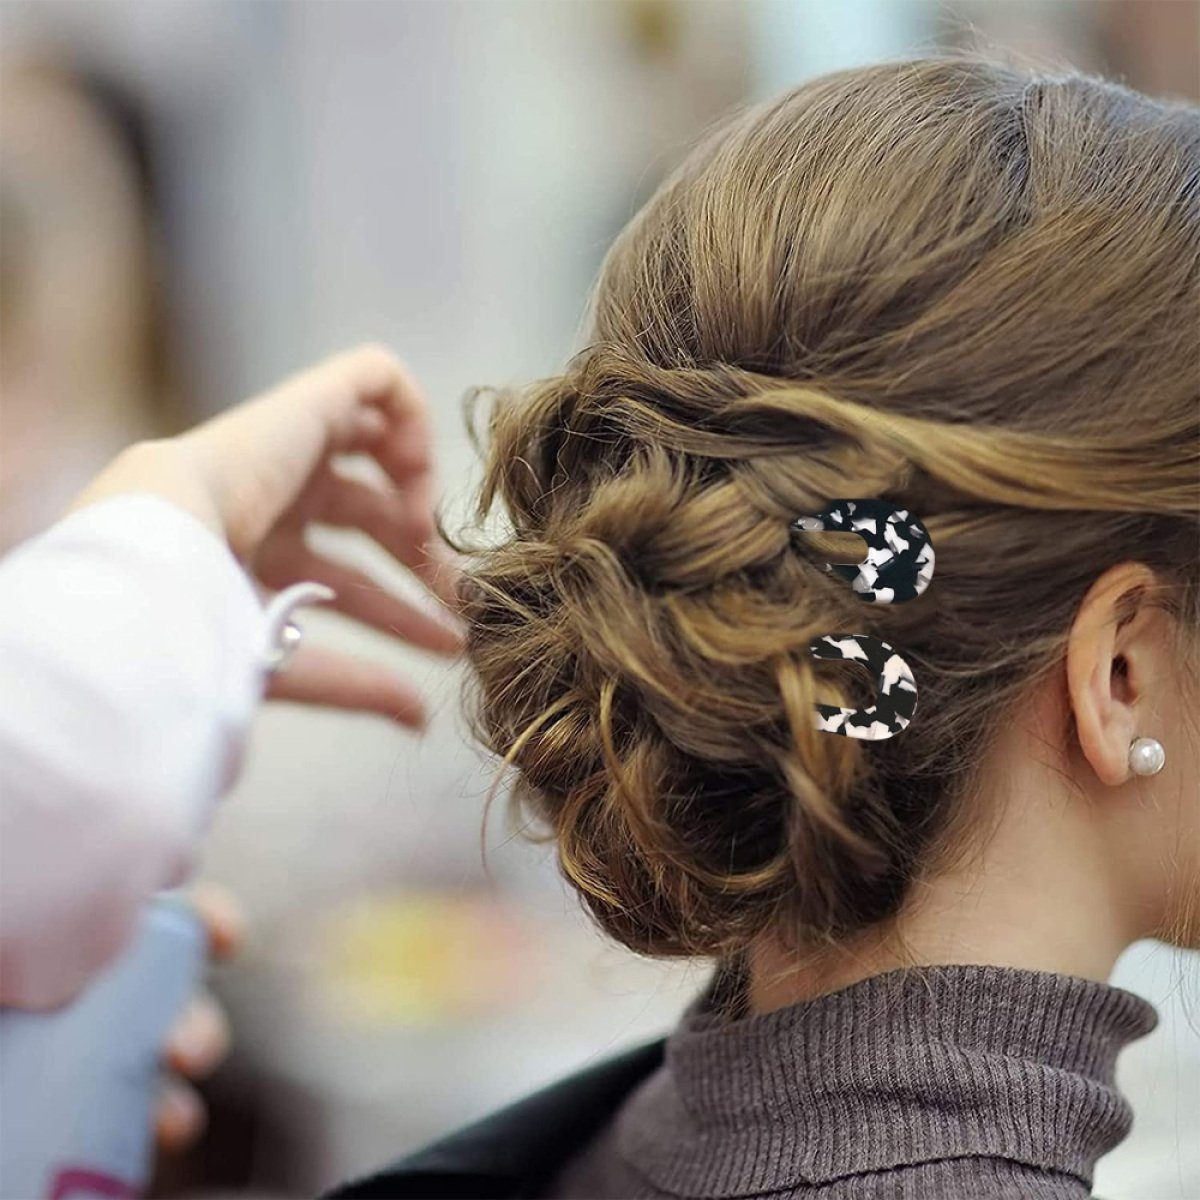 Jormftte Haarnadeln U-förmige Haarnadel,Französisch Frauen Haarspange,für Mehrfarbig2 Stil Haarstyling